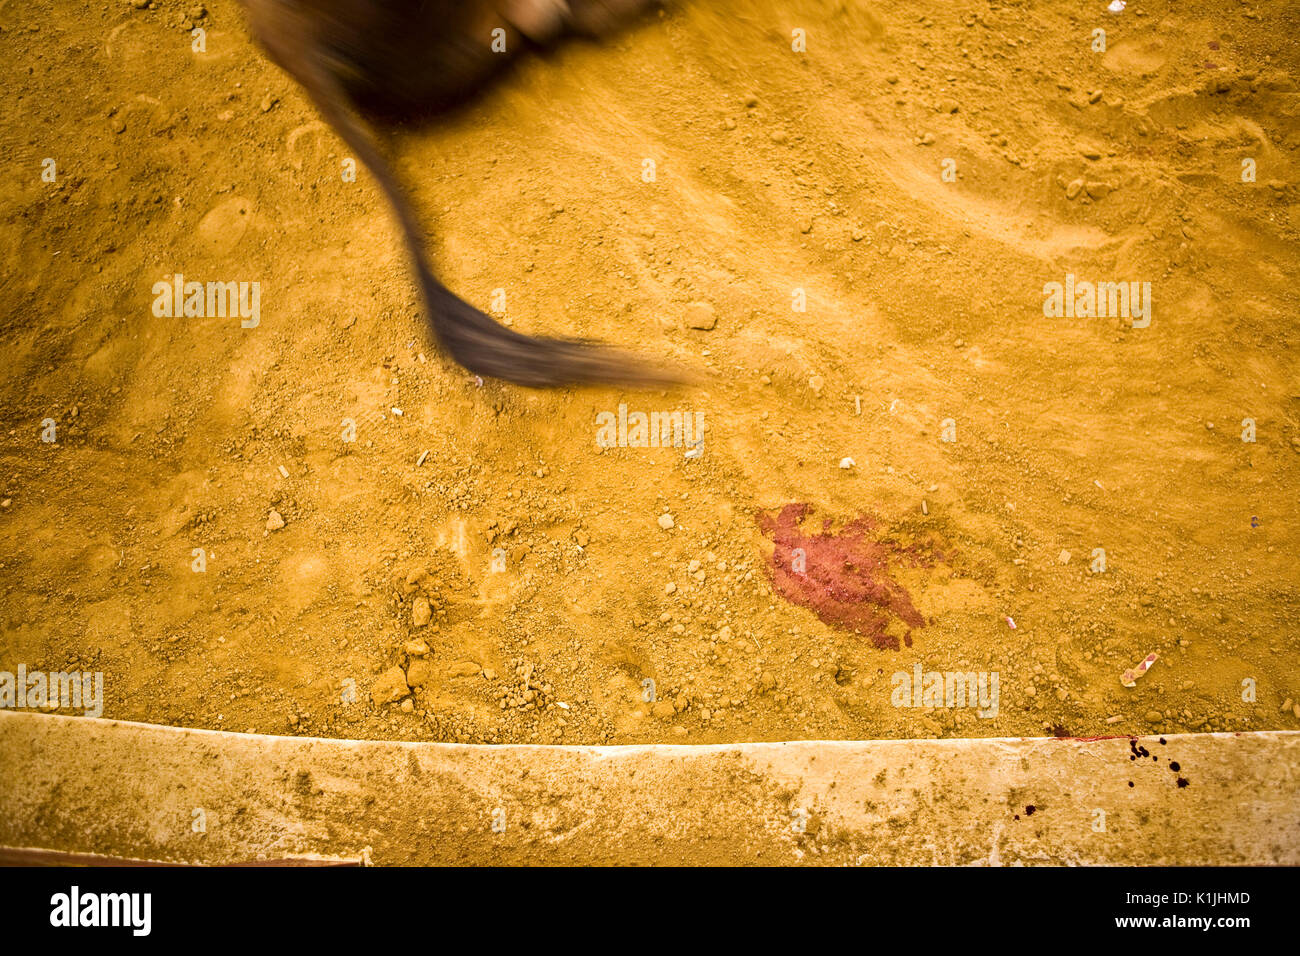 Il trascinamento di Bull è morto sulla sabbia della corrida lascia una traccia di sangue, Immagine concettuale Foto Stock